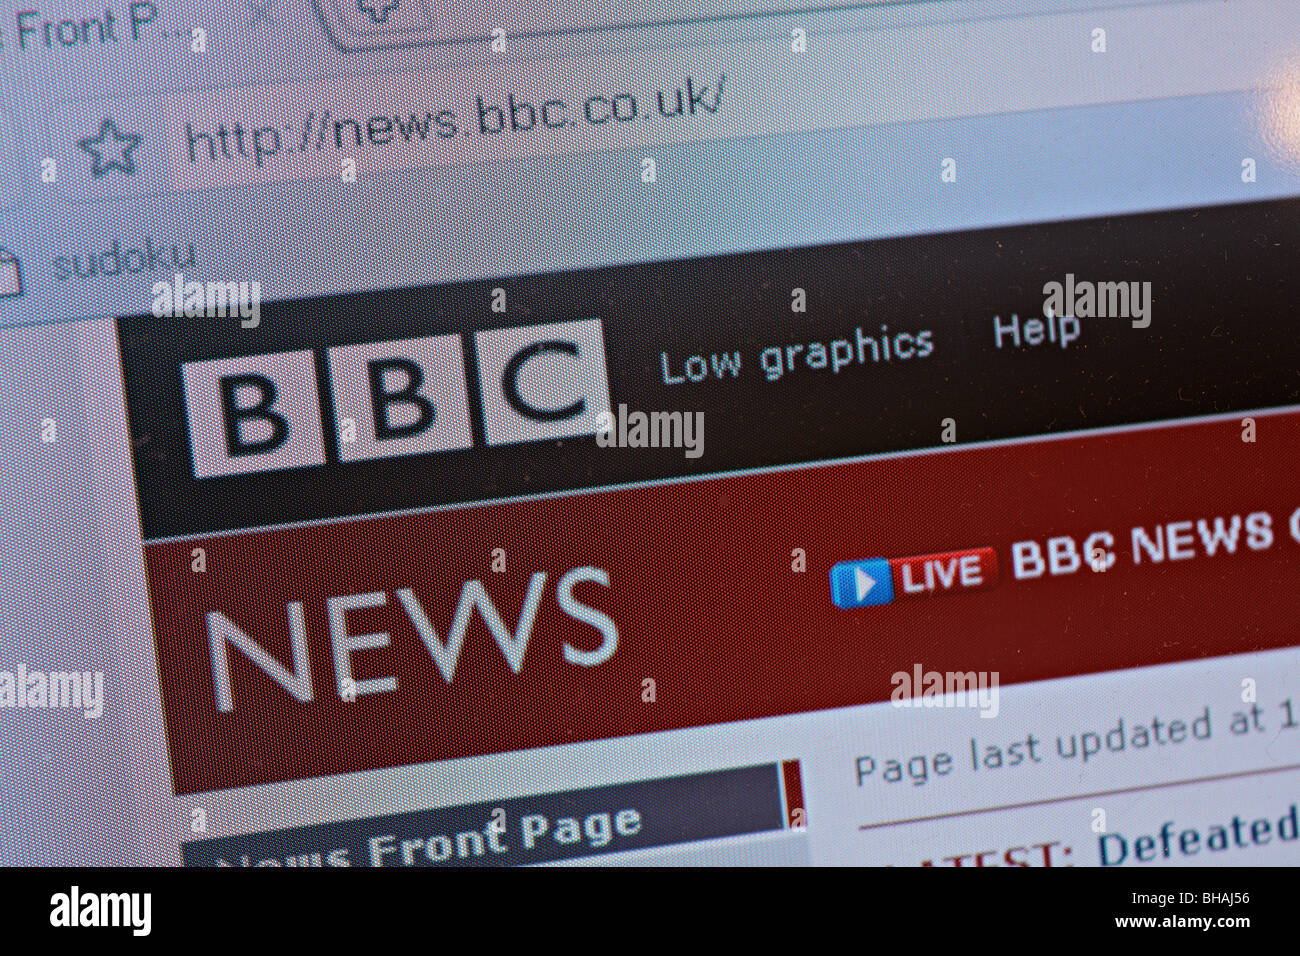 BBC News homepage - screenshot Stock Photo